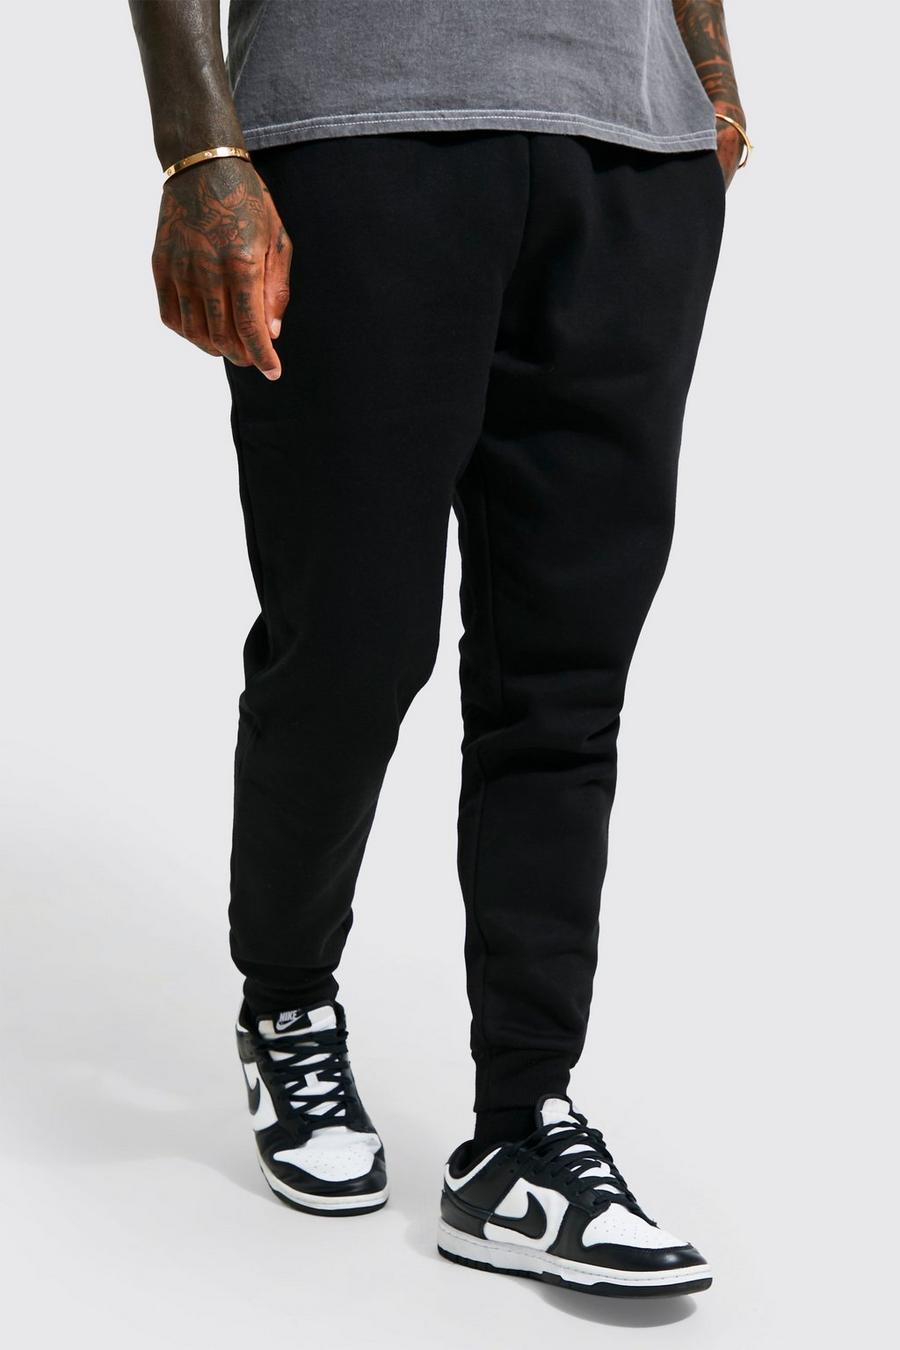 Pantaloni tuta Basic Slim Fit, Black nero